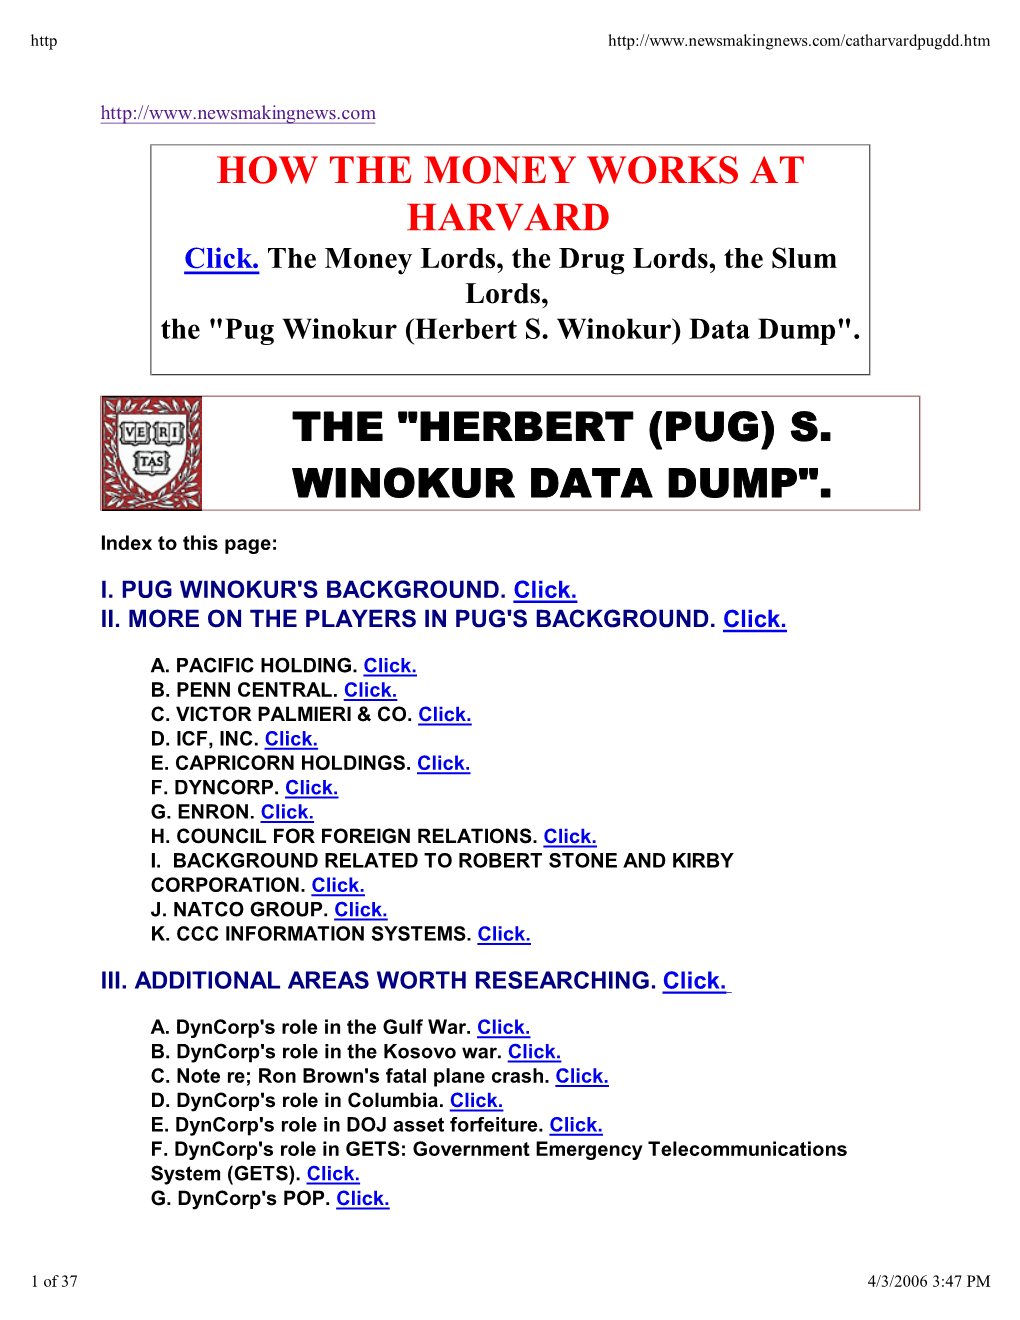 "Herbert (Pug) S. Winokur Data Dump"